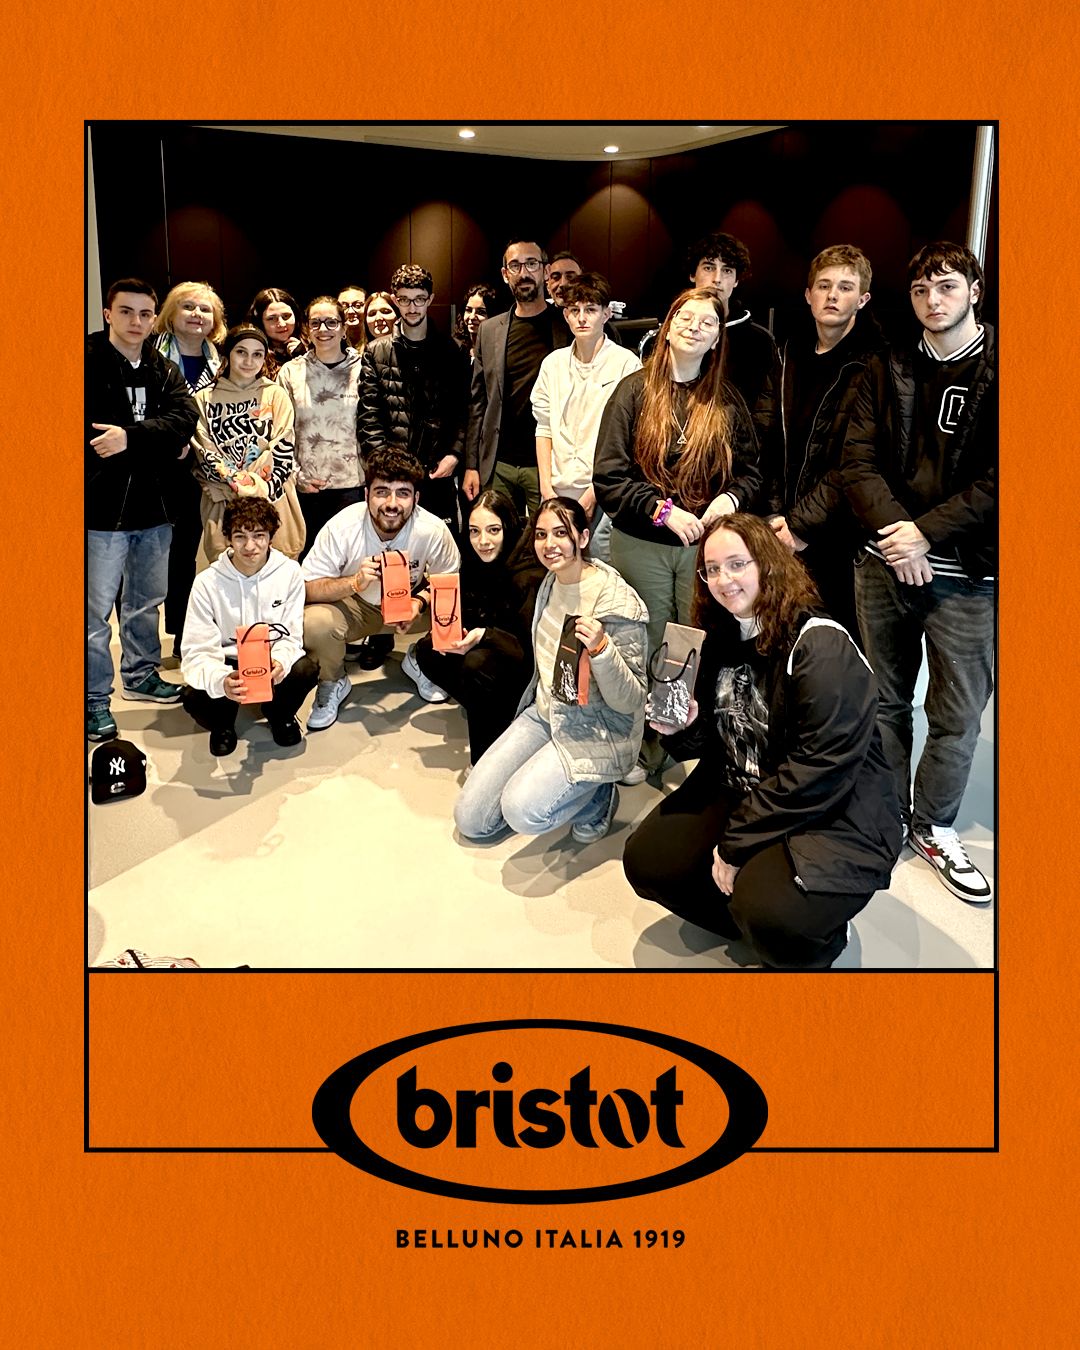 Precious Visitors to Bristot Academy!